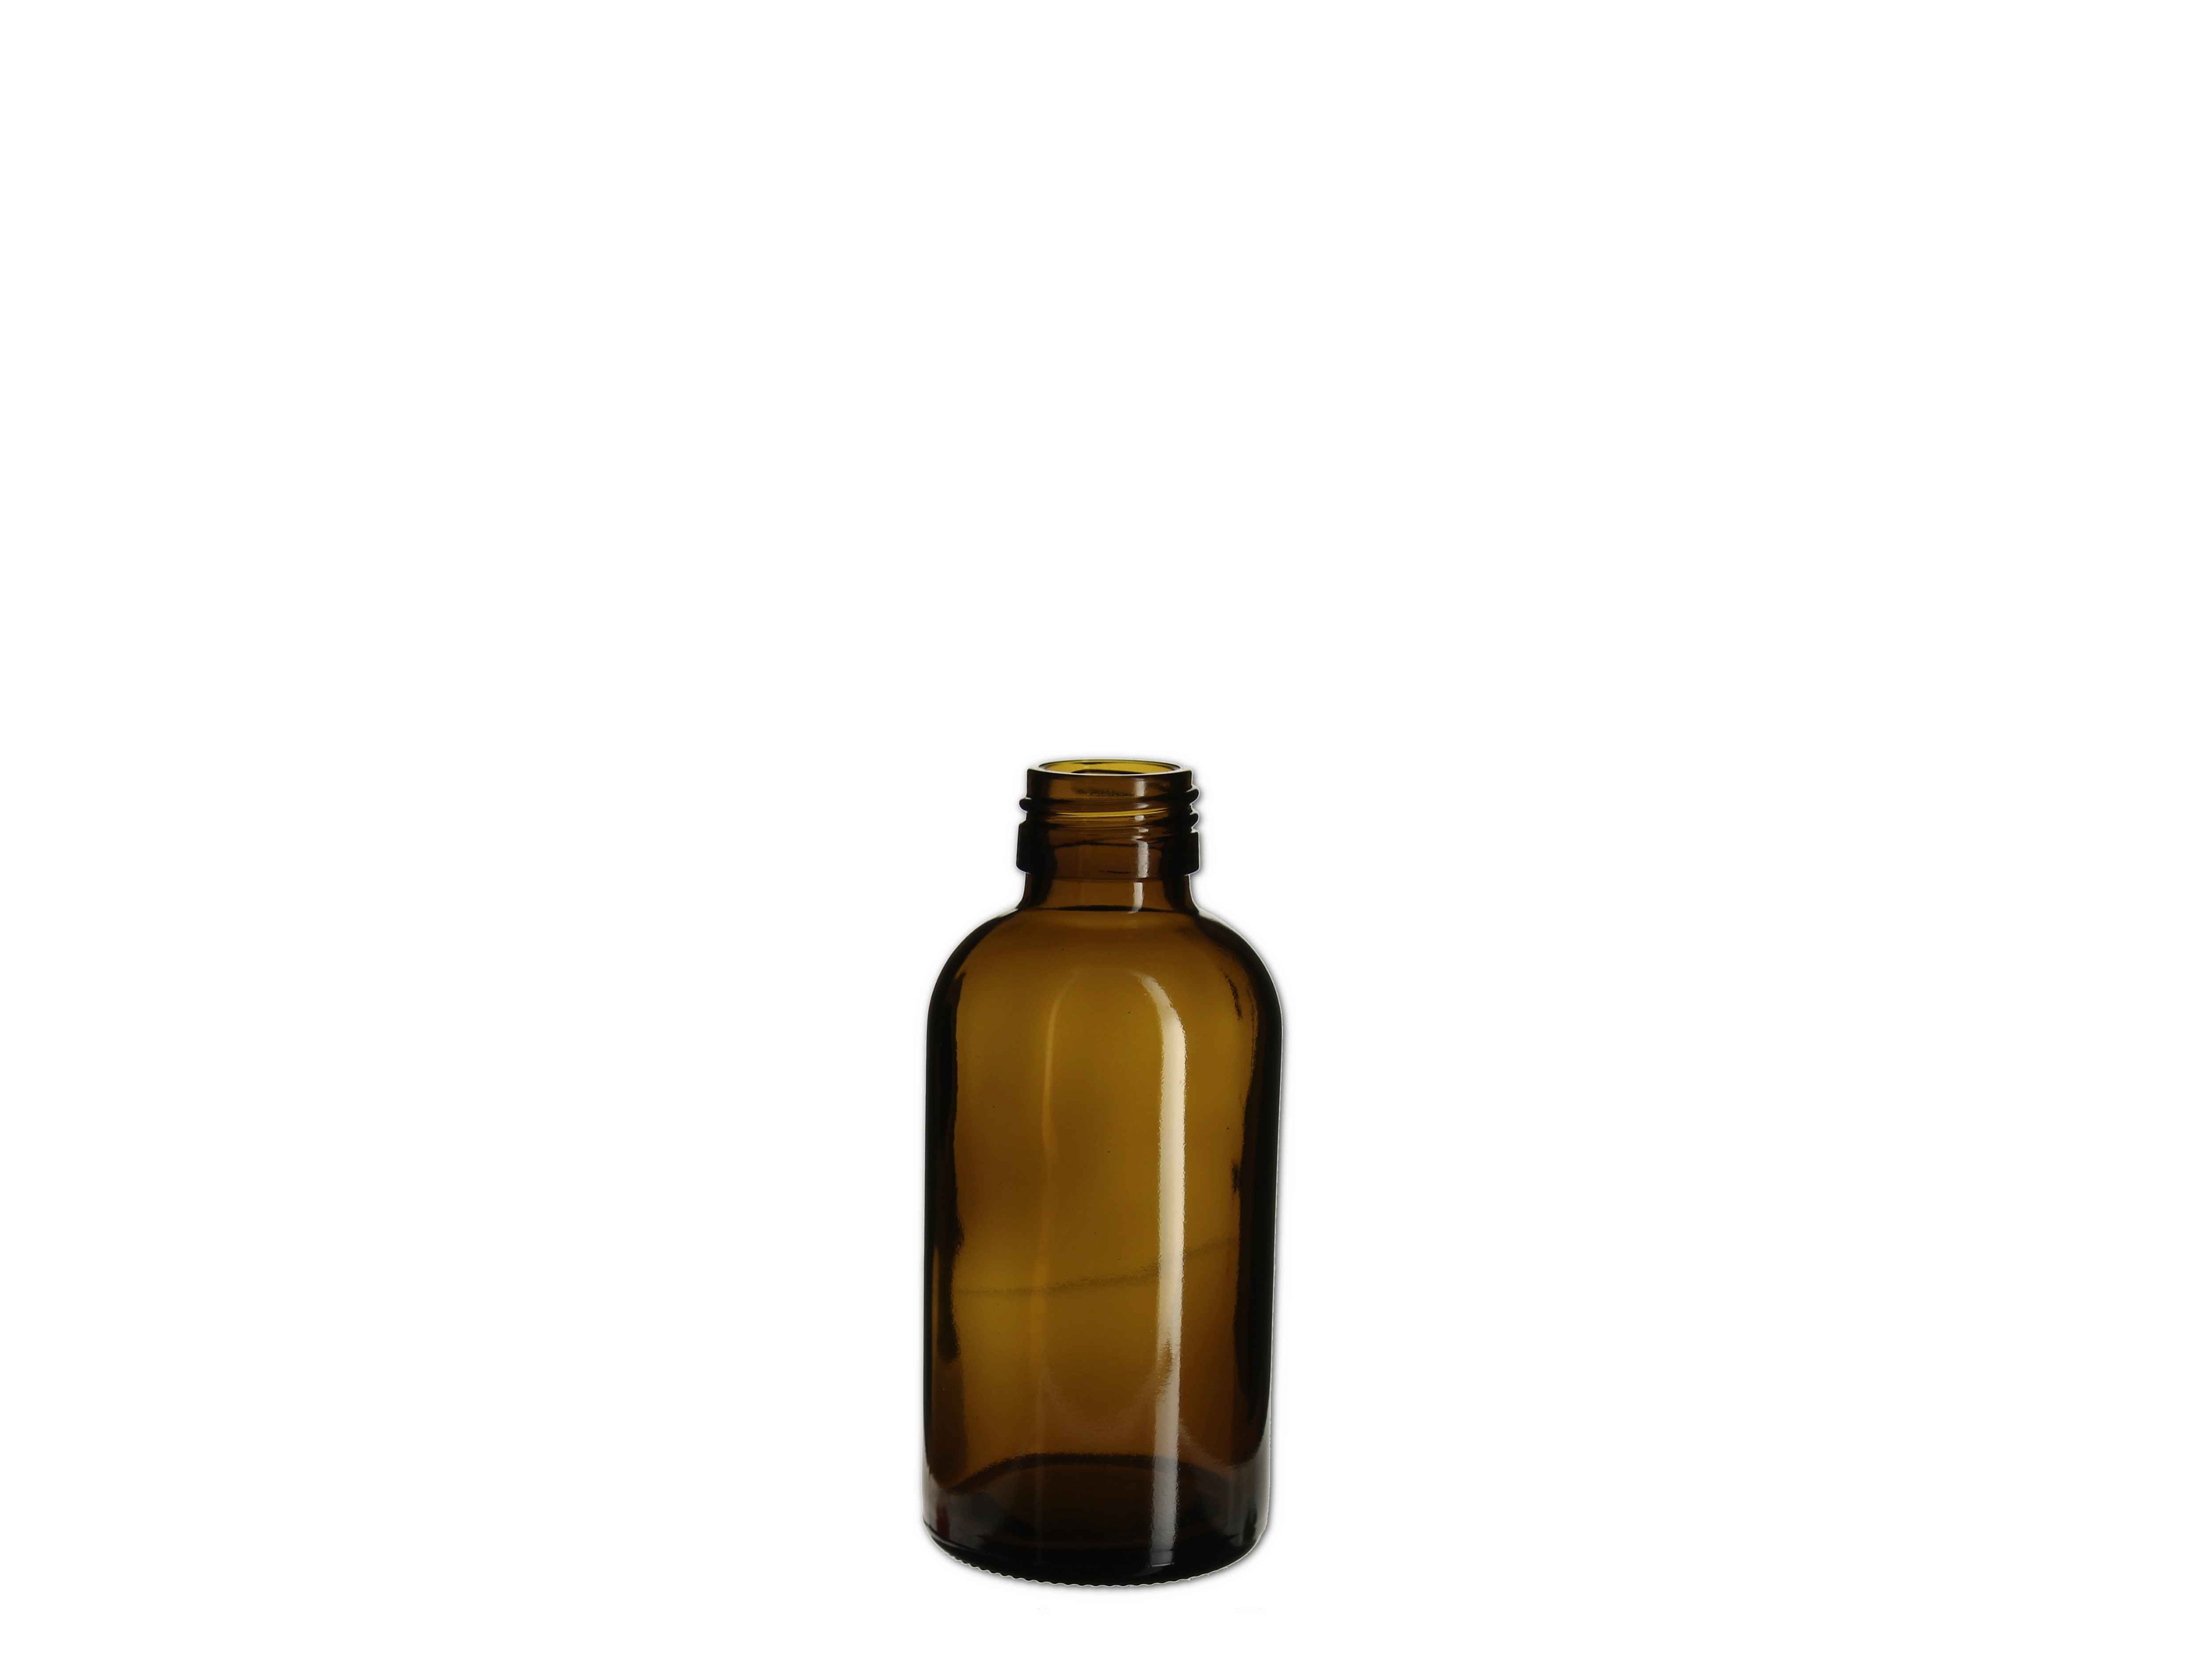    Medizin Flasche braun - PP28 - 150ml